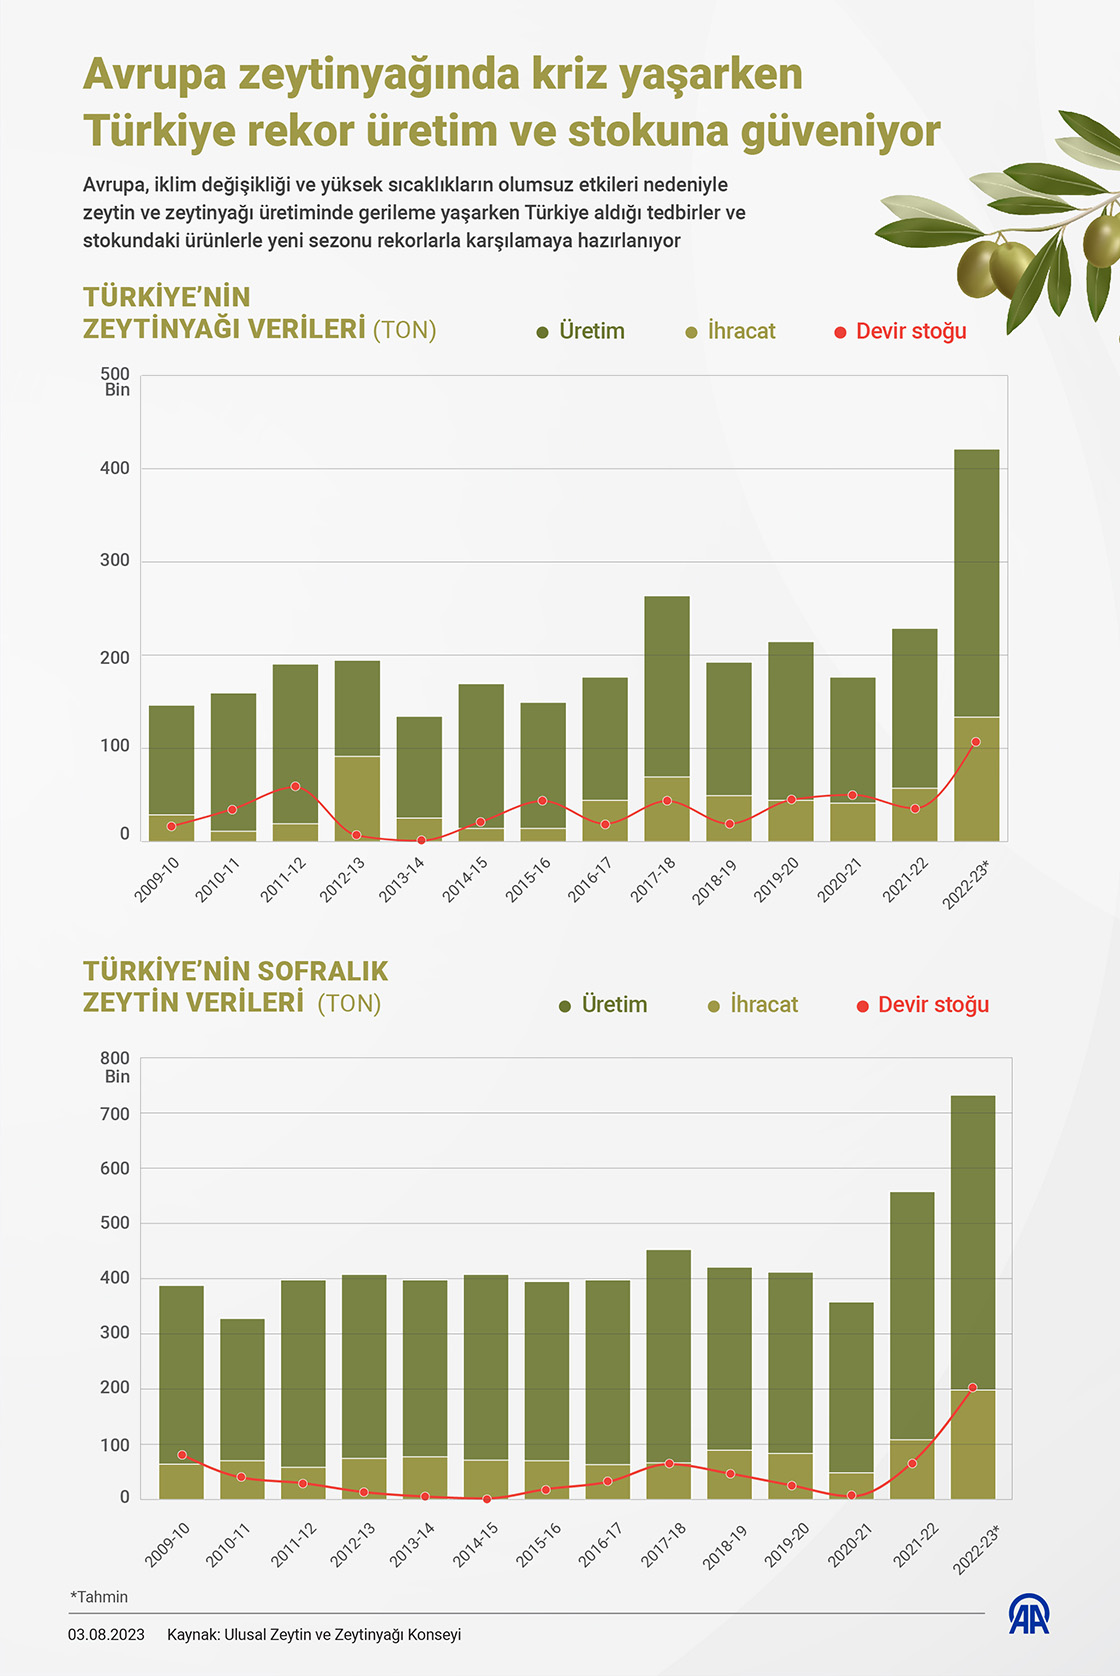 Avrupa'da Zeytinyağı Üretimi Düşüyor, Fiyatlar Yükseliyor